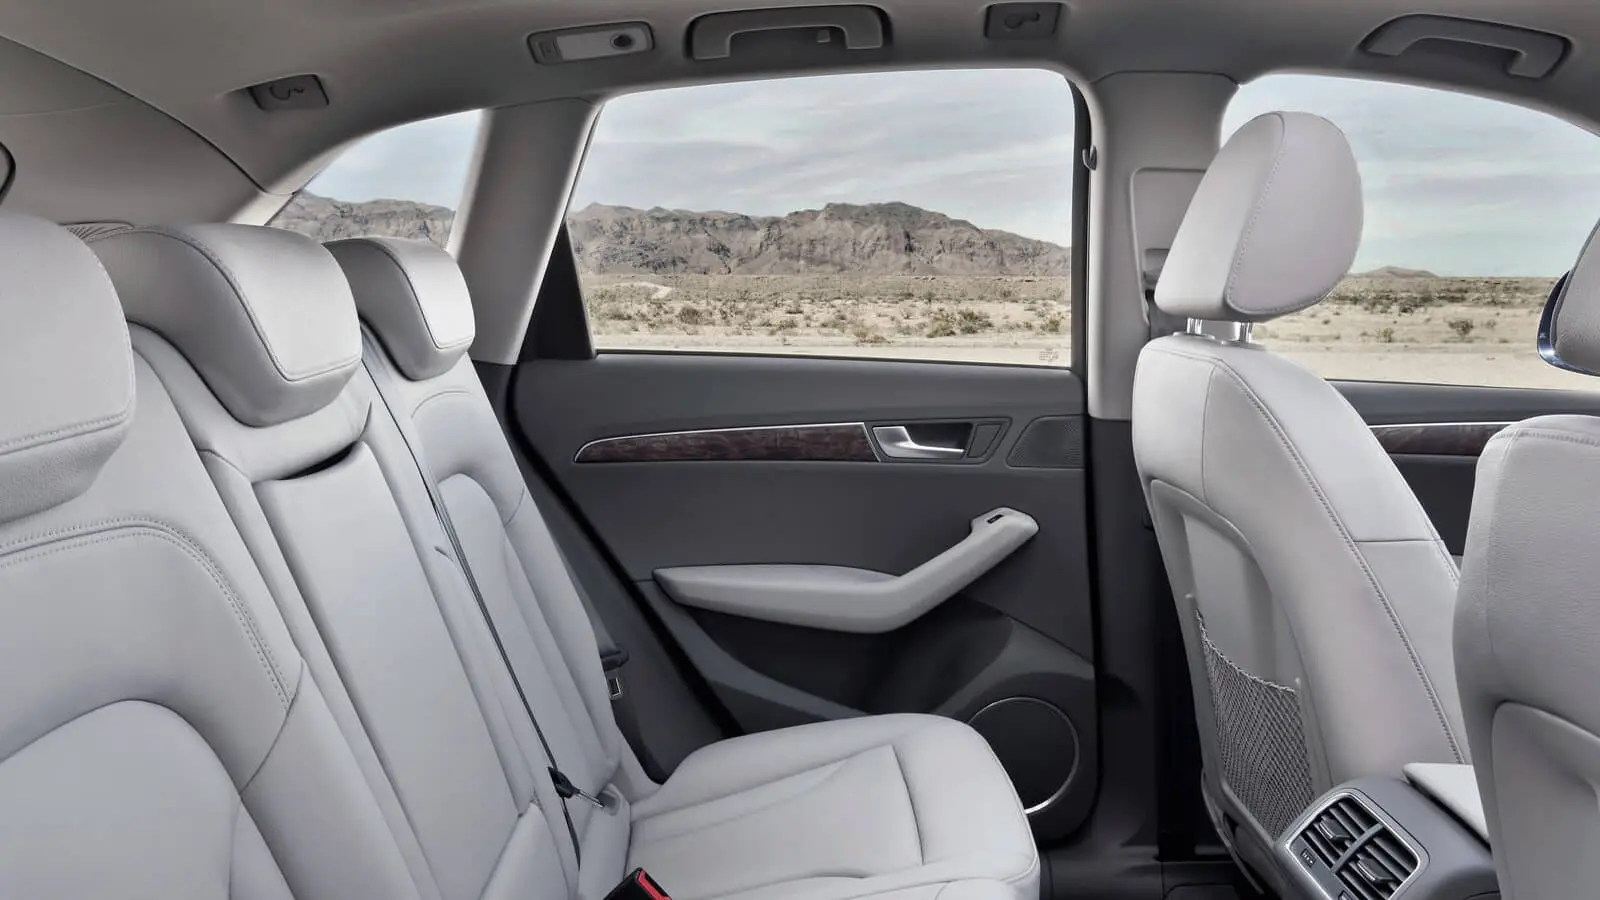 Audi Q5 interior in white